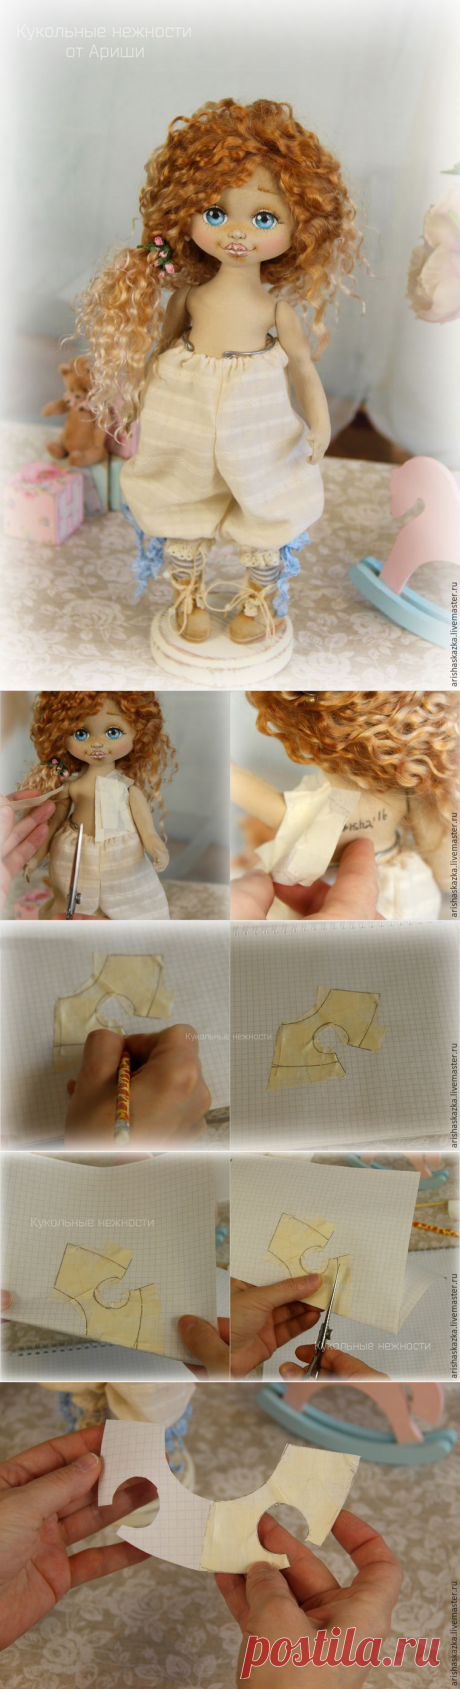 Делаем выкройку лифа для куклы - Ярмарка Мастеров - ручная работа, handmade